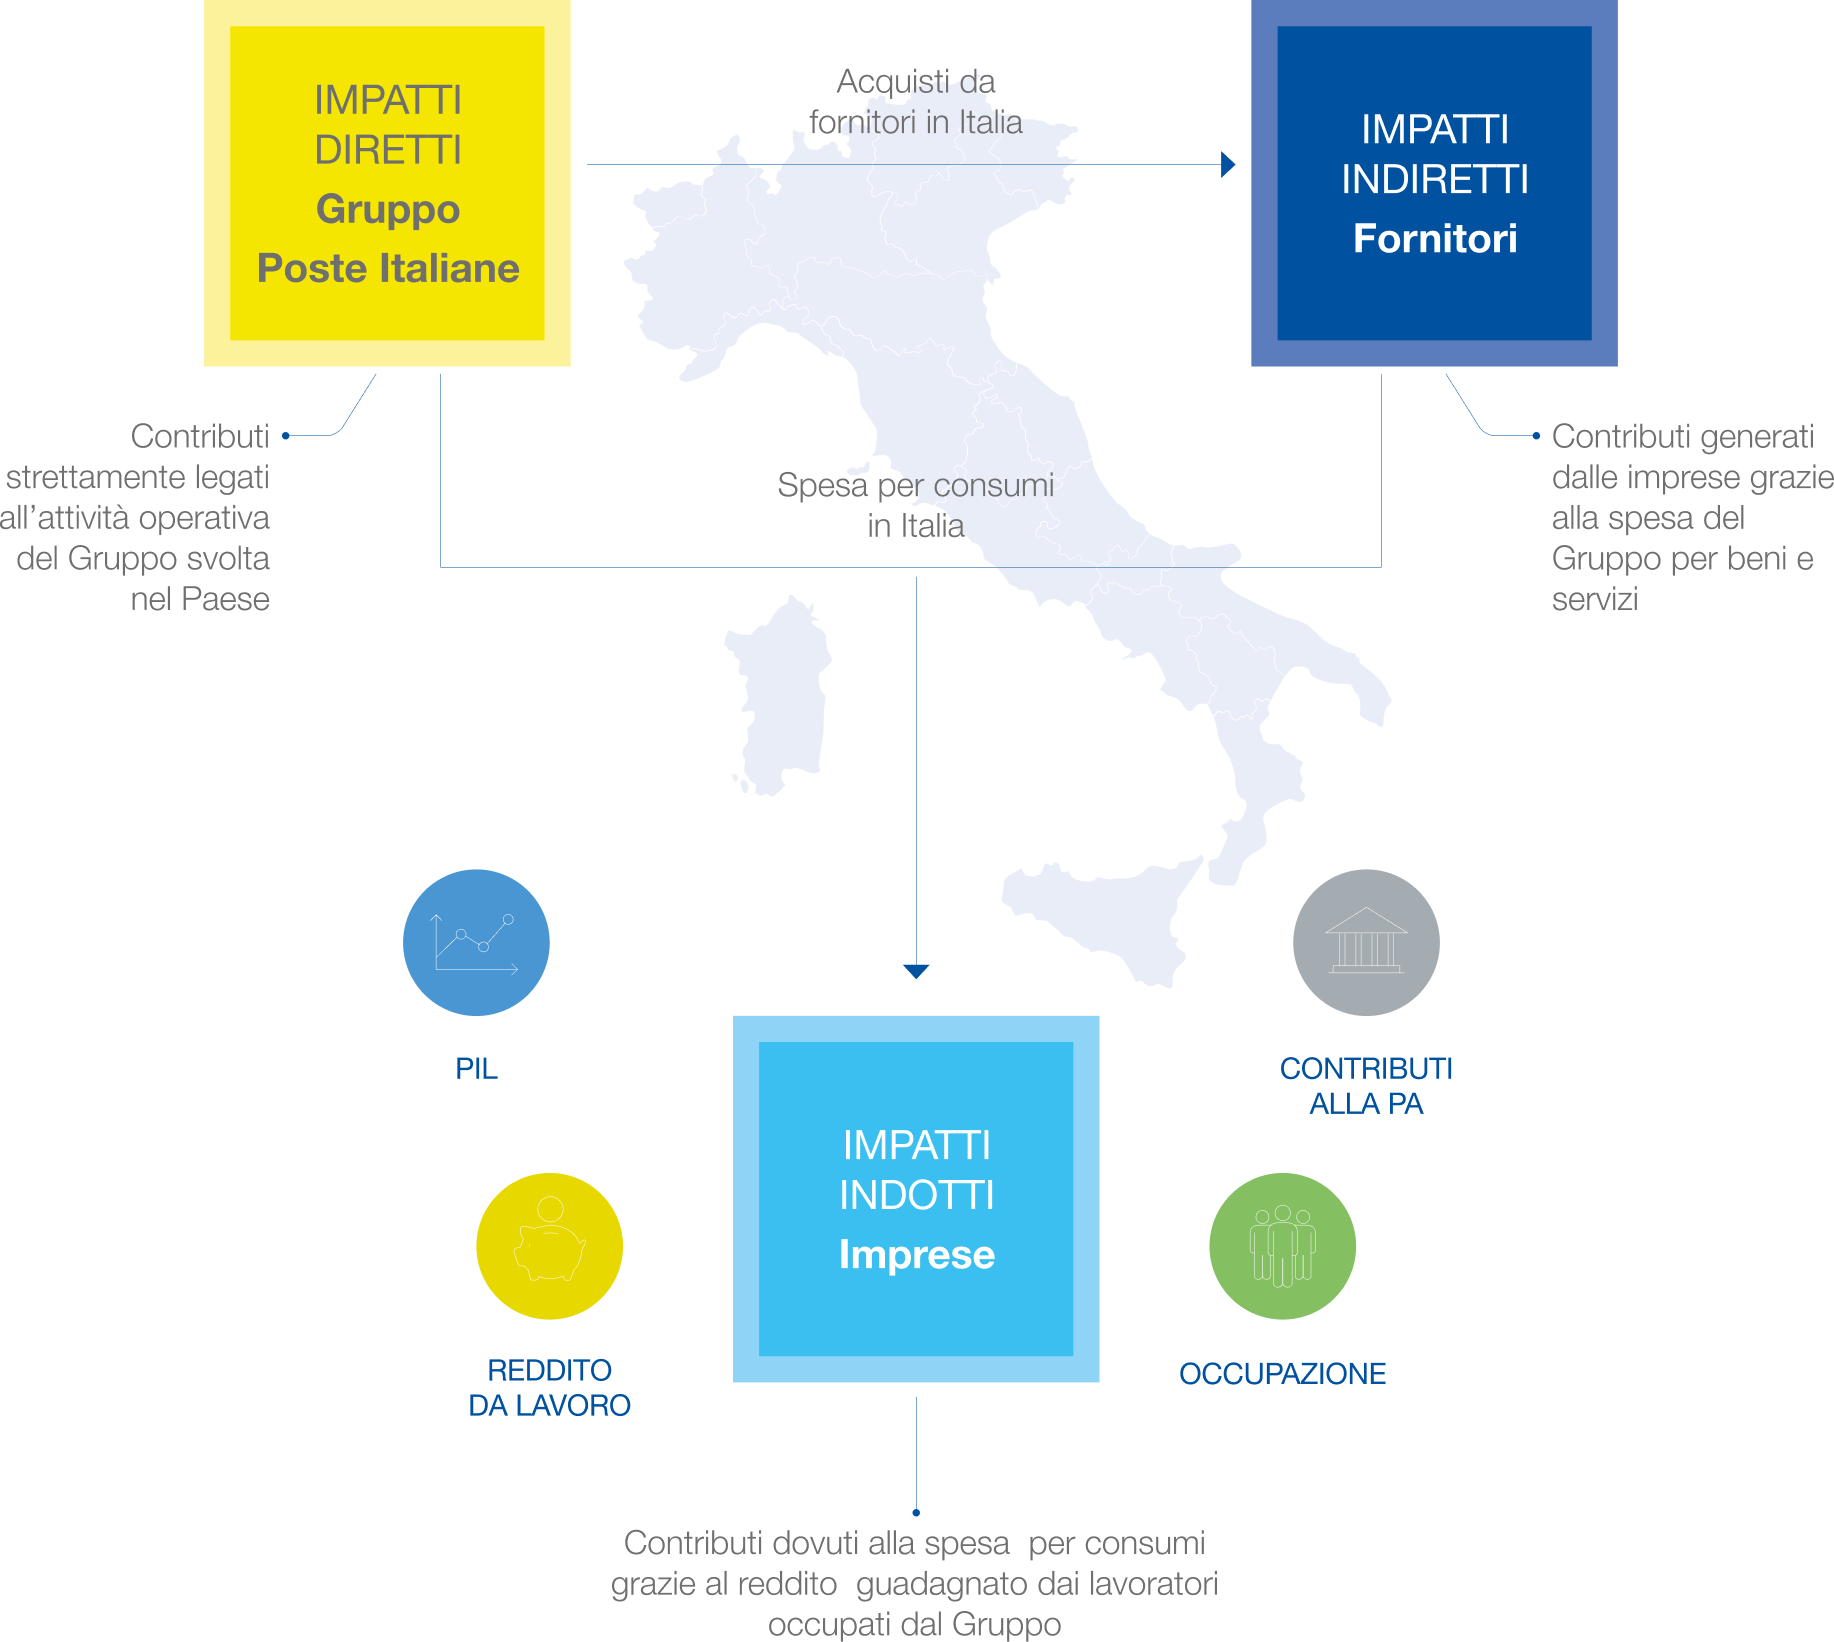 Il processo di creazione del valore economico di Poste Italiane: Impatti diretti (Gruppo Poste Italiane); Impatti indiretti (Fornitori) e Impatti indotti (Imprese)